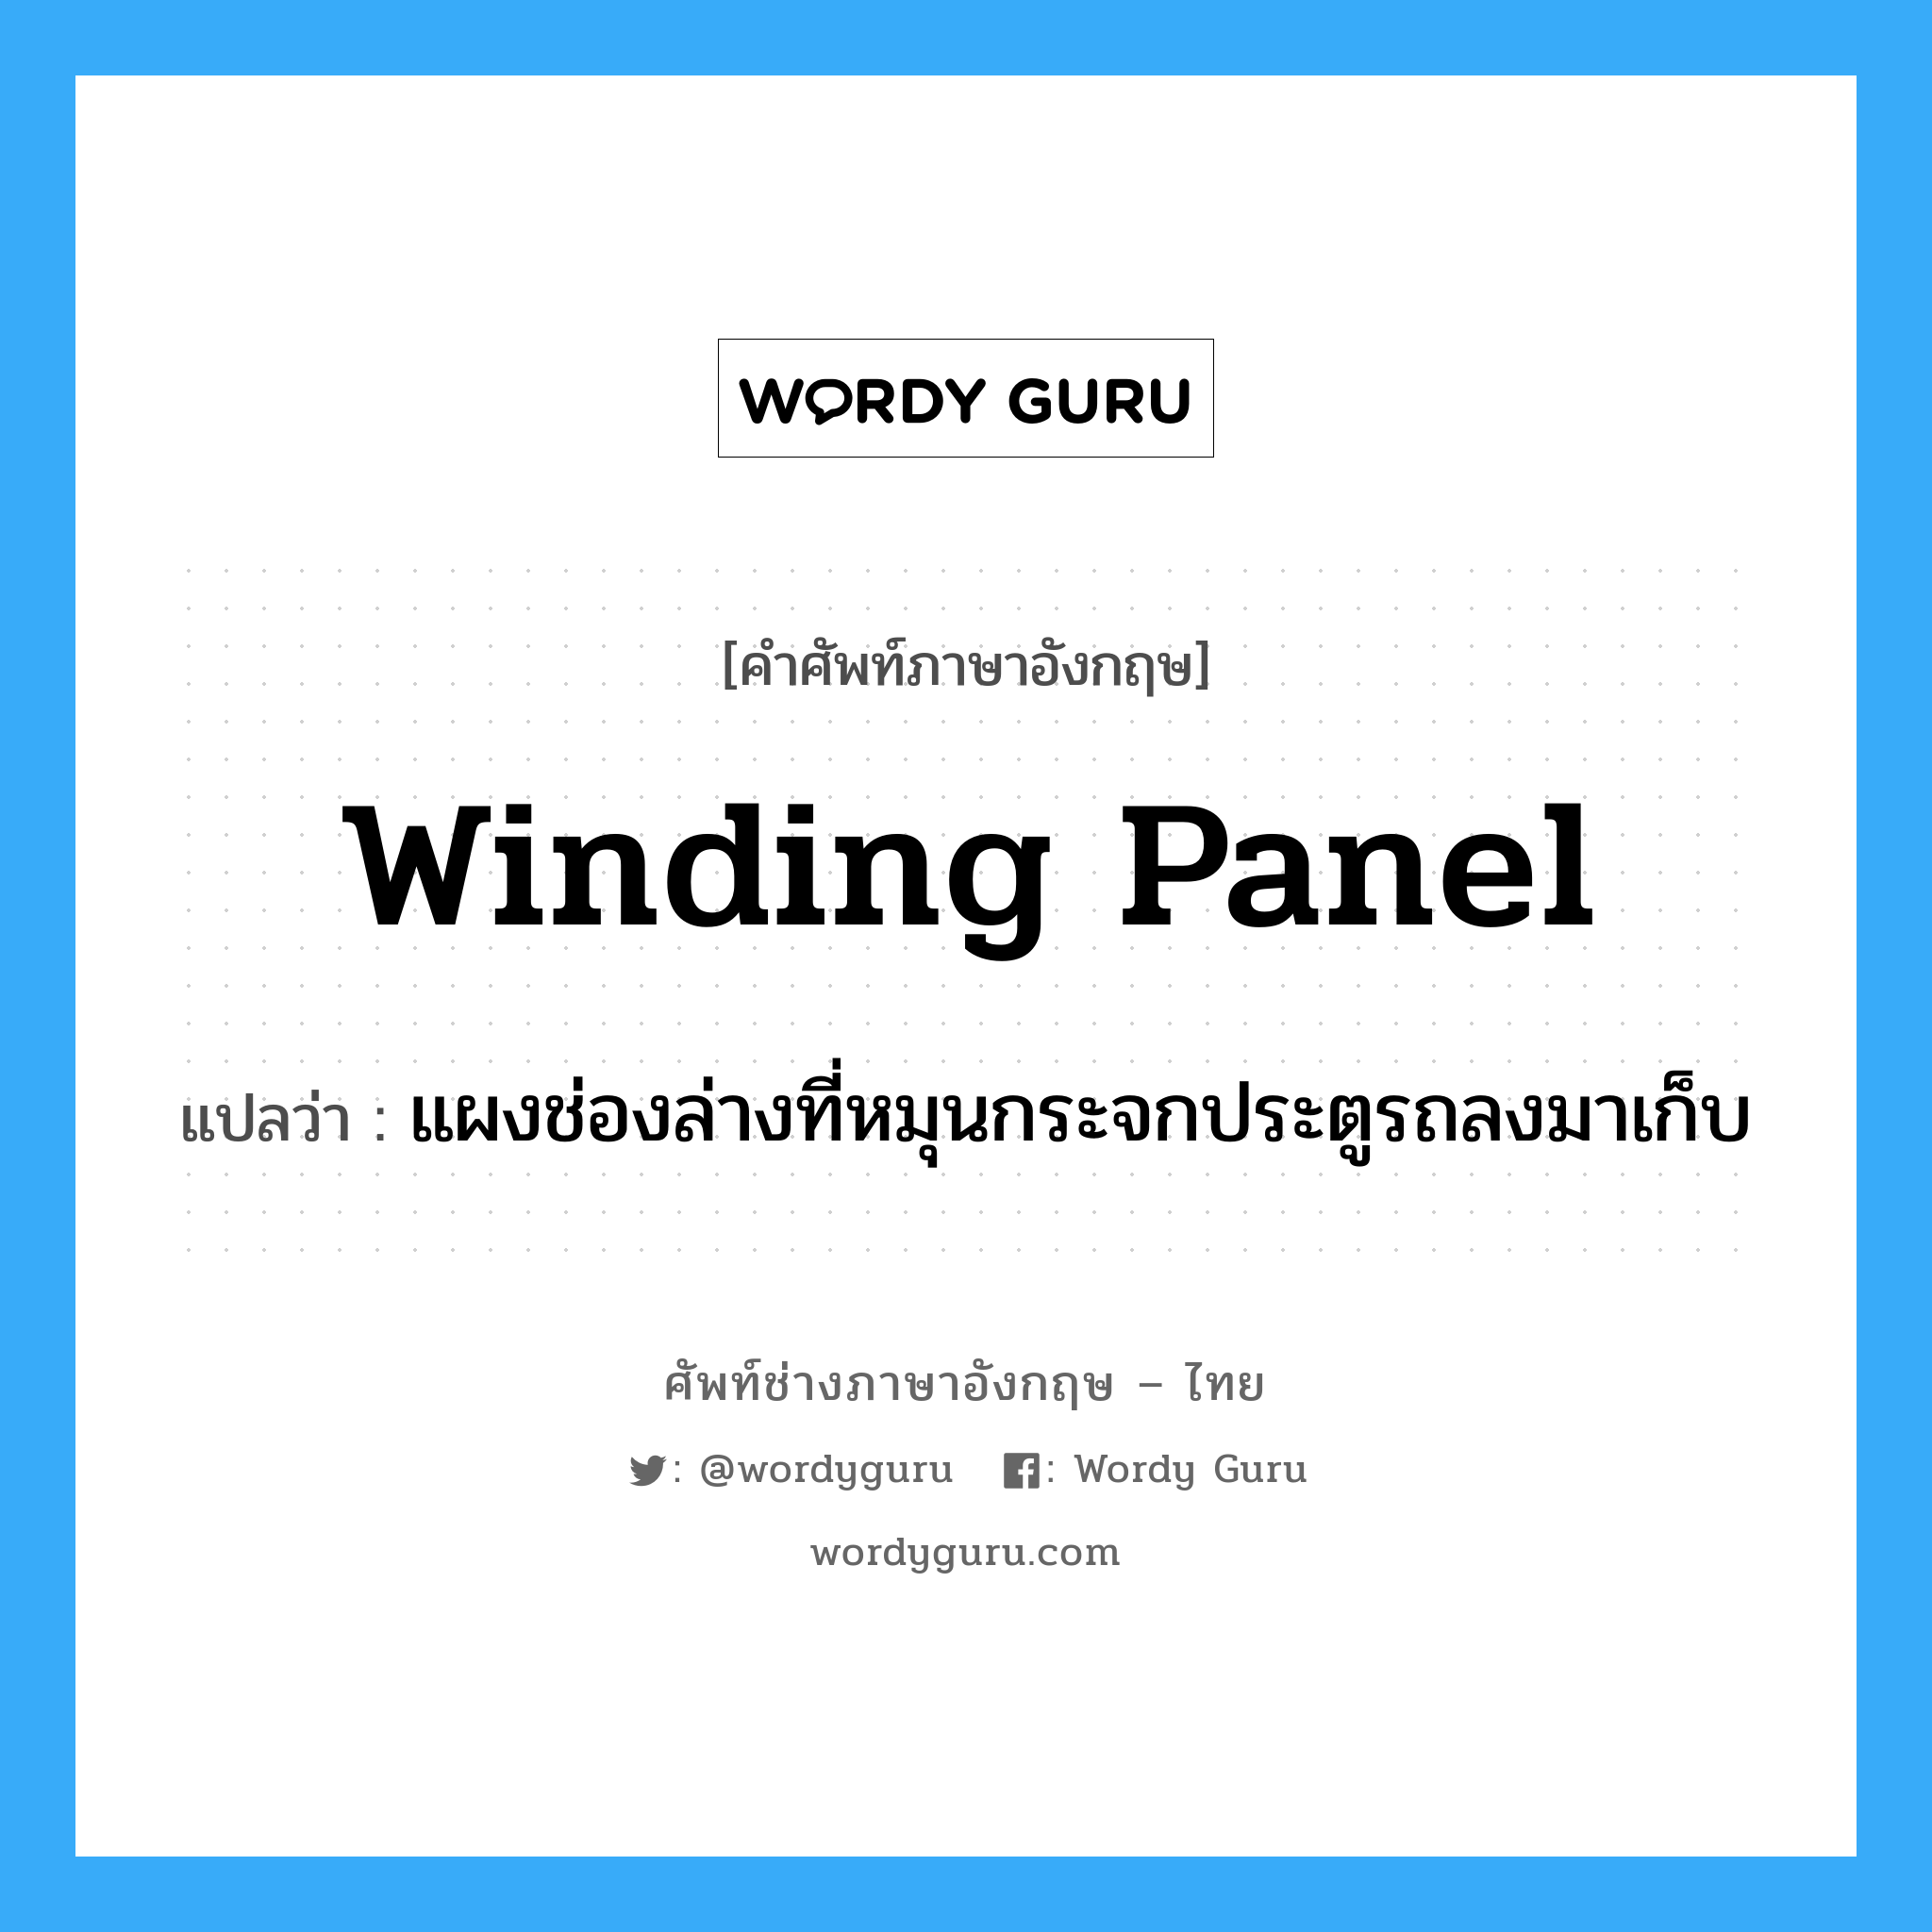 winding panel แปลว่า?, คำศัพท์ช่างภาษาอังกฤษ - ไทย winding panel คำศัพท์ภาษาอังกฤษ winding panel แปลว่า แผงช่องล่างที่หมุนกระจกประตูรถลงมาเก็บ